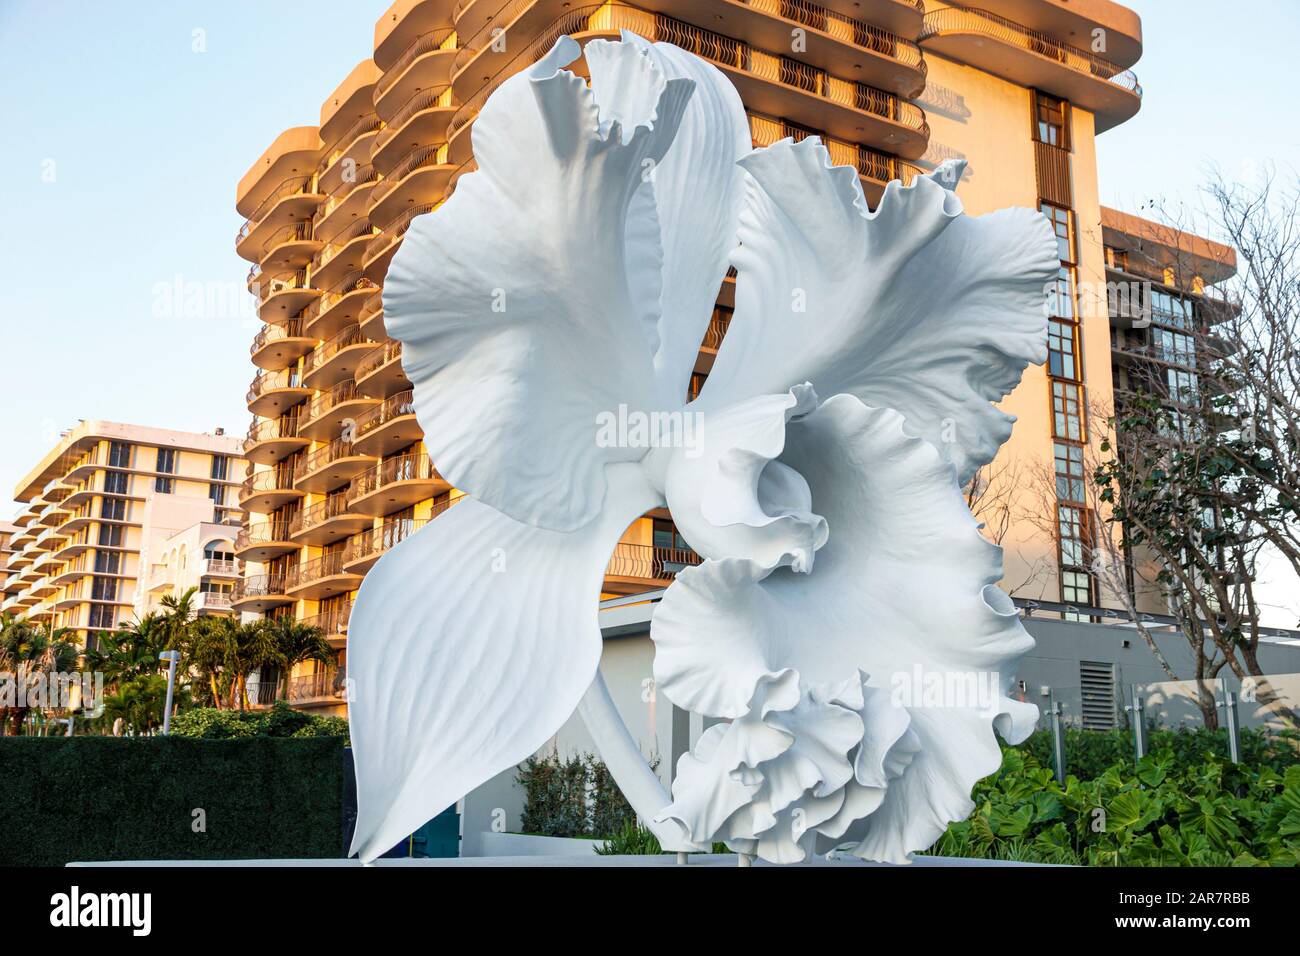 Miami Beach Florida, Surfside Eighty Seven Park, Renzo Piano luxueux condominium bâtiment orchidée sculpture, réduit démoli Champlain Towers ainsi Banque D'Images